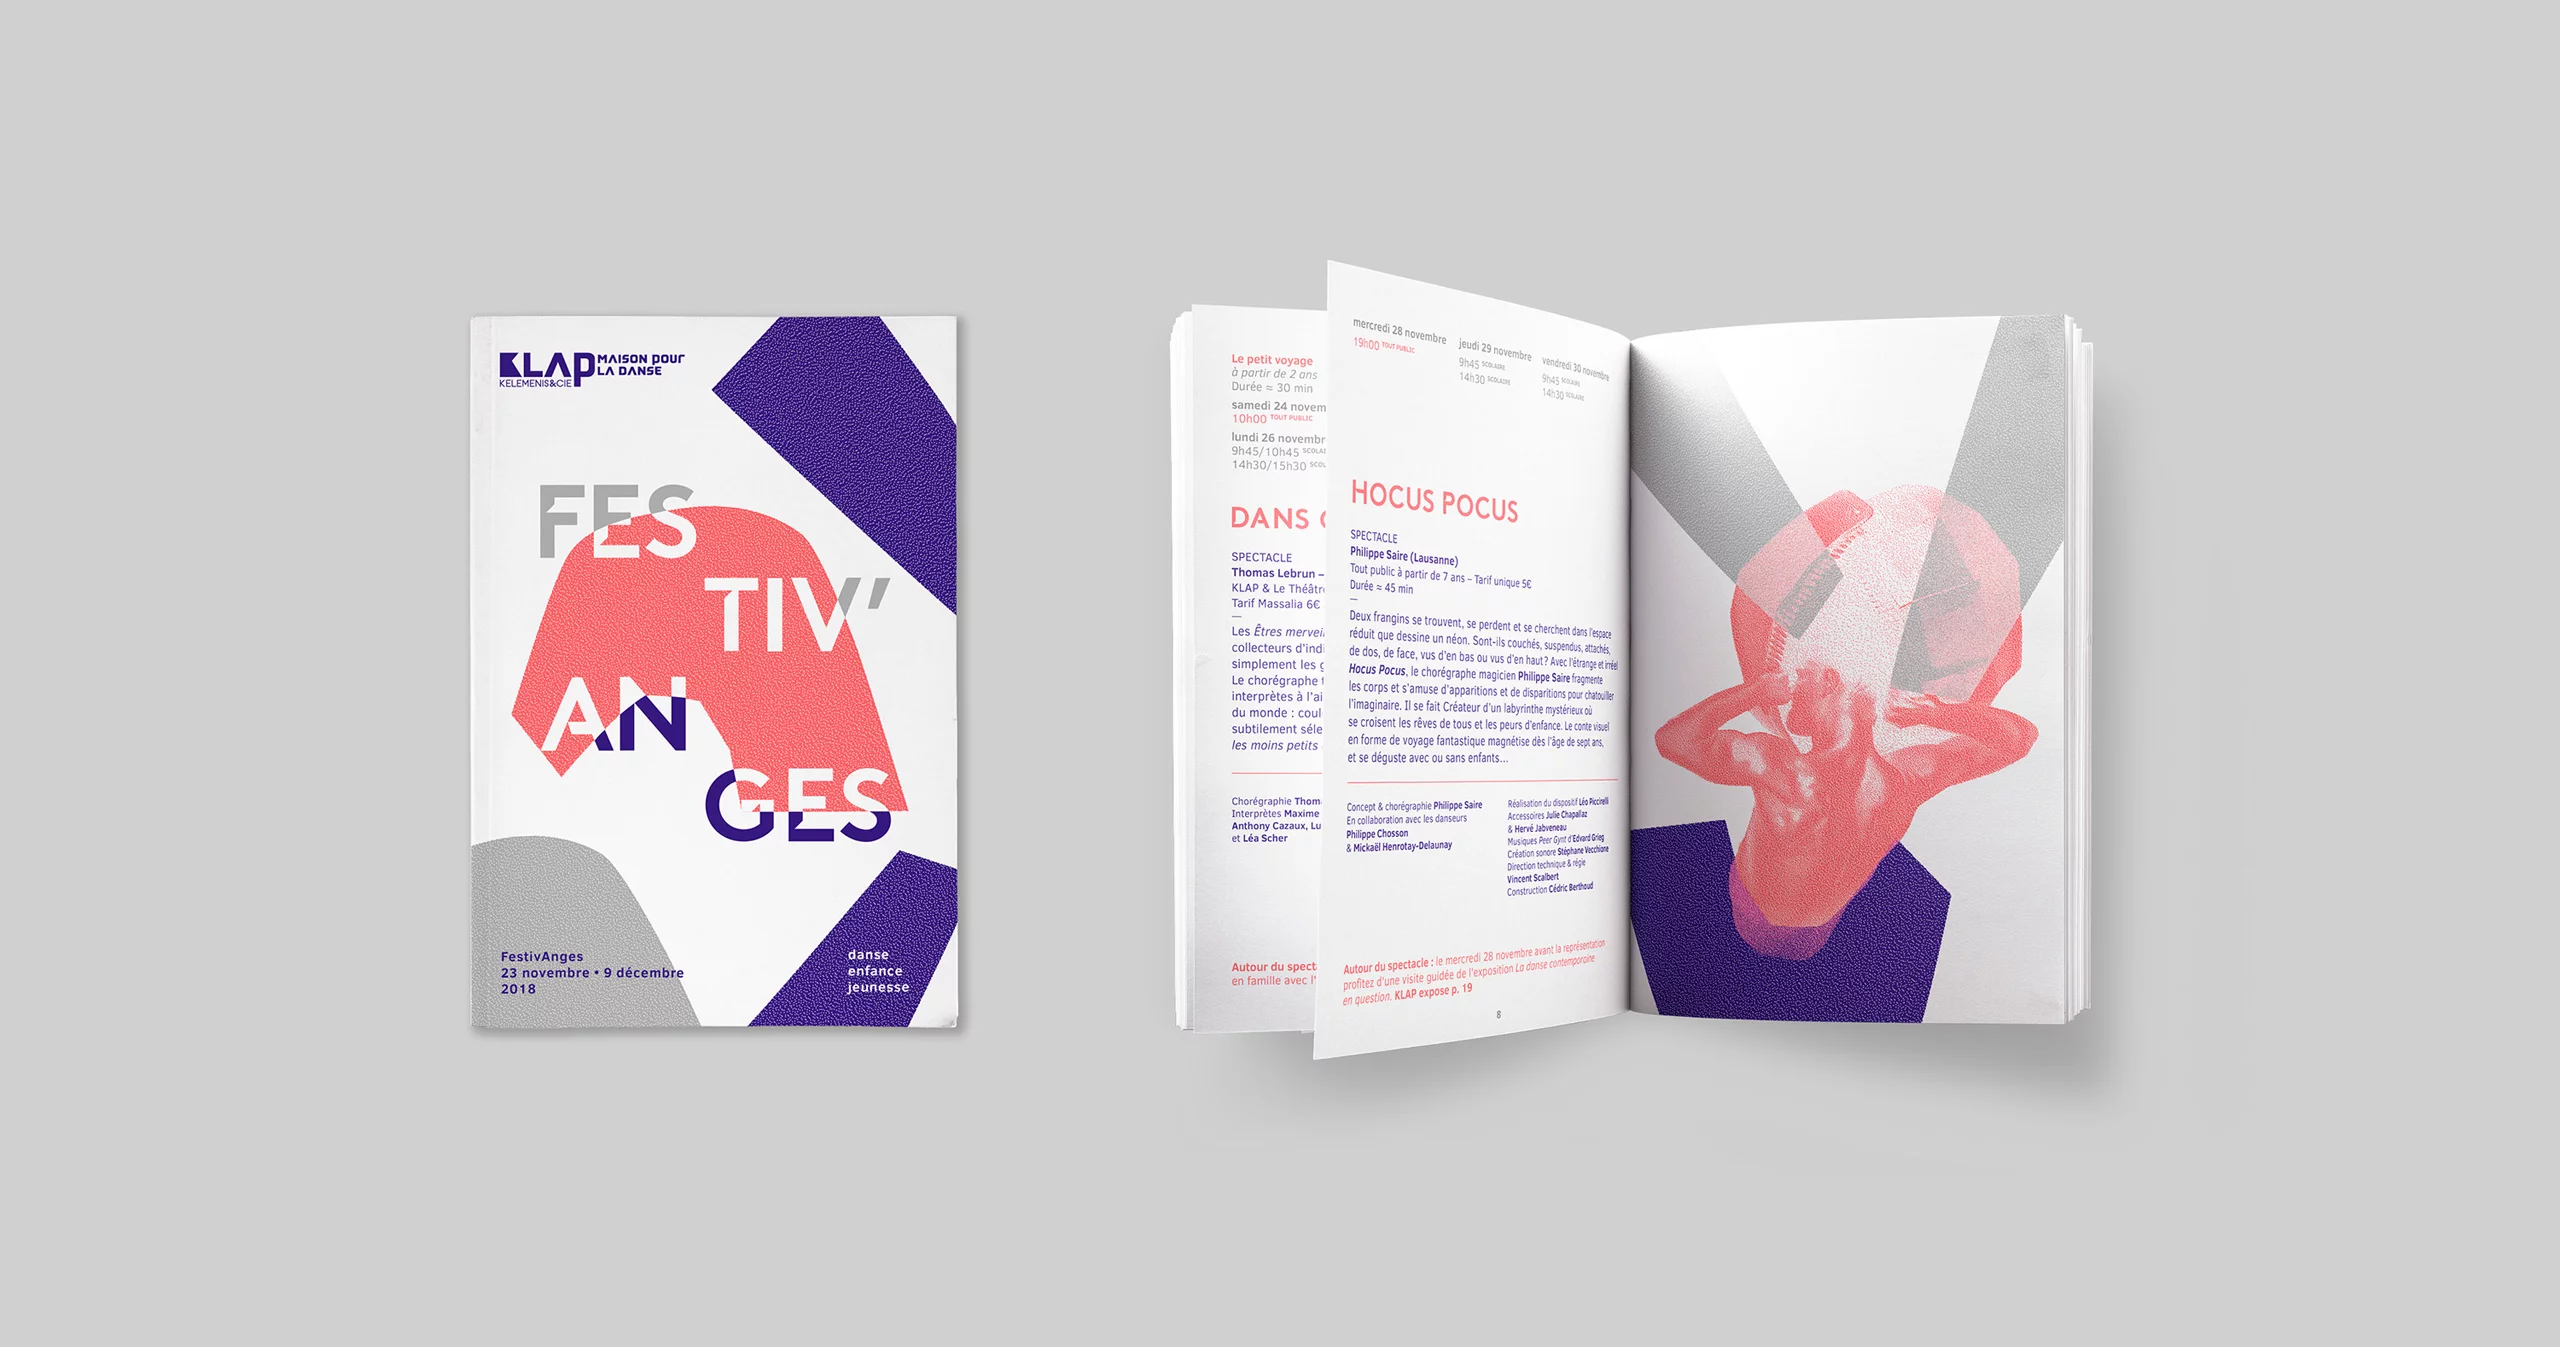 Couverture et page intérieure de brochure Festivanges 2018. Photomontage de formes abstraites découpées jouant avec la typographie et personnages